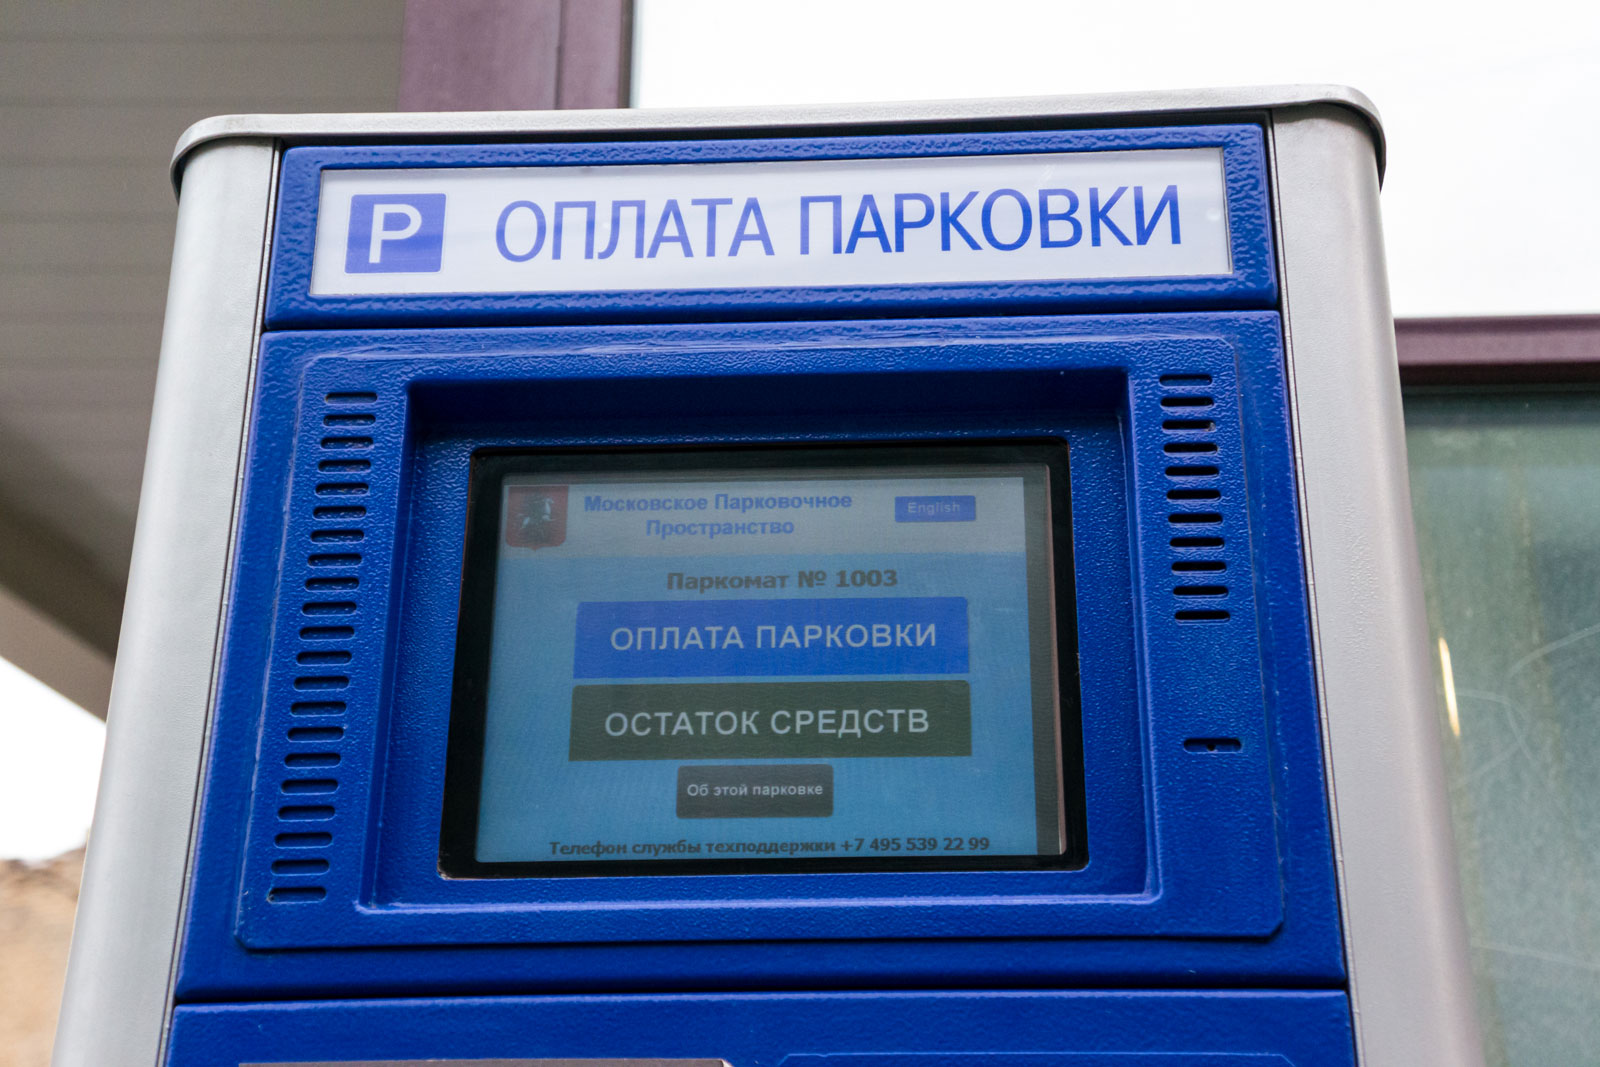 Москвичи смогут оплатить парковку через ГЛОНАСС